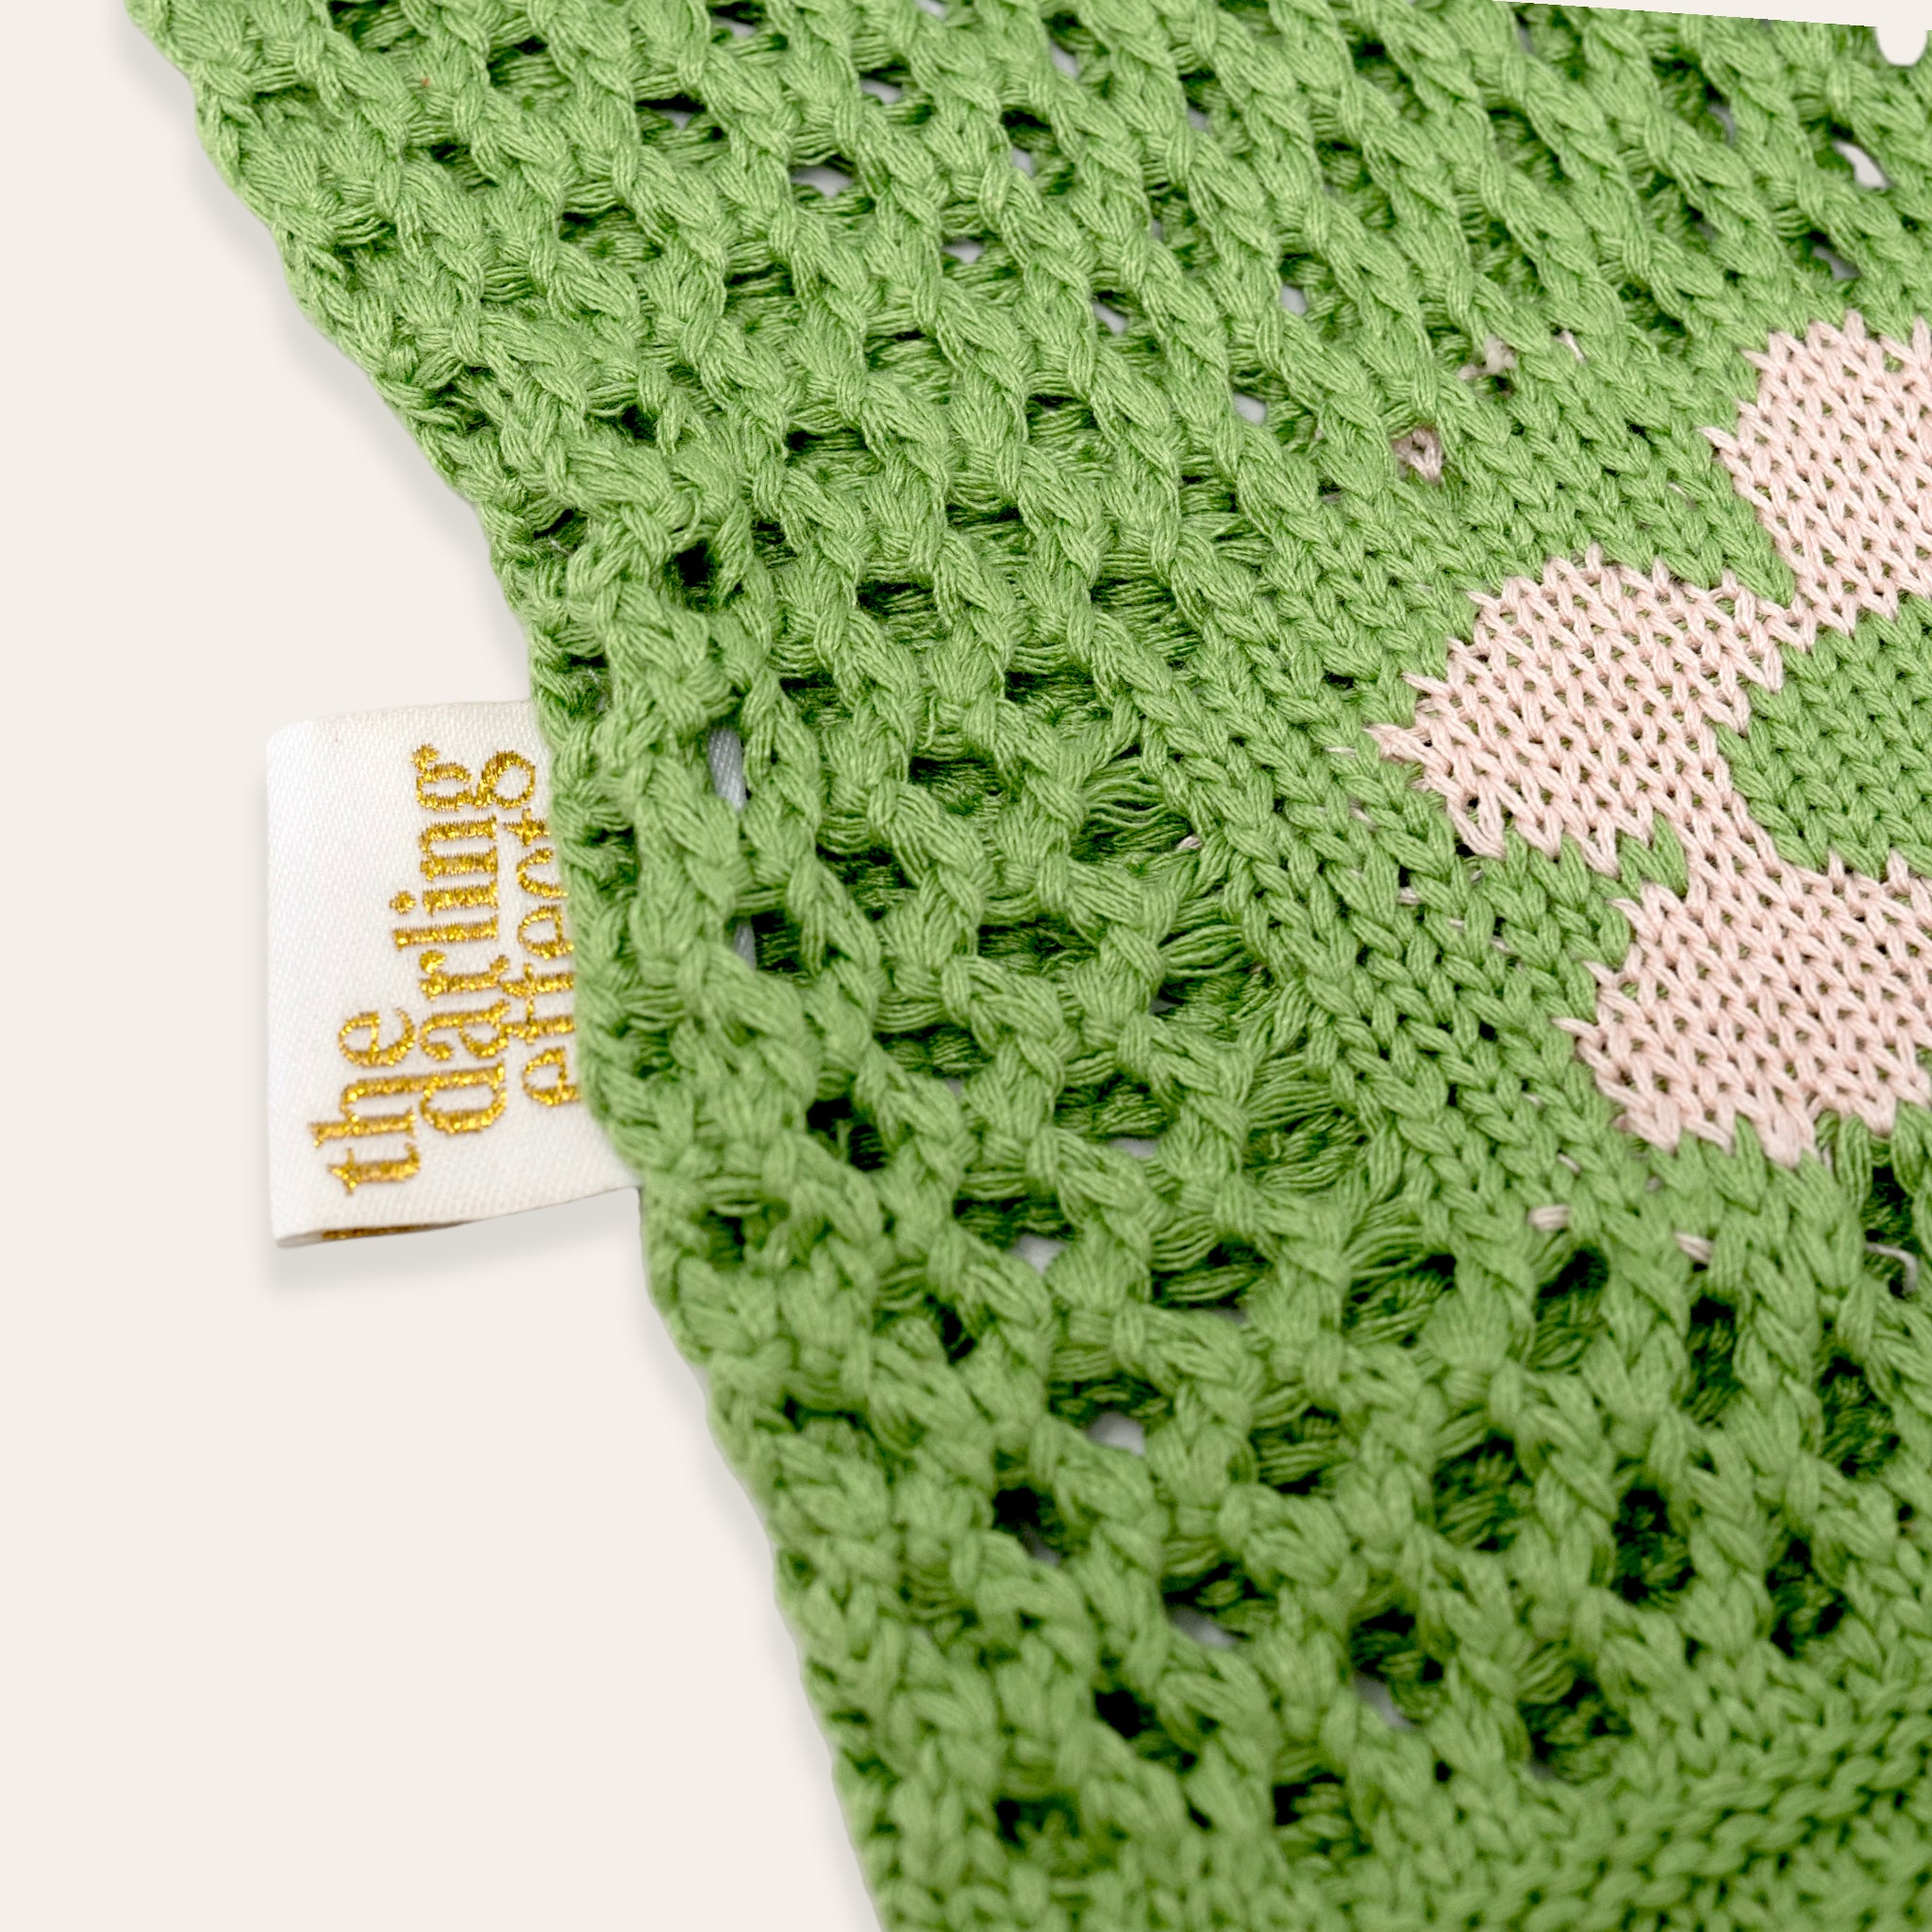 Floral Crochet Slouchy Shoulder Bag